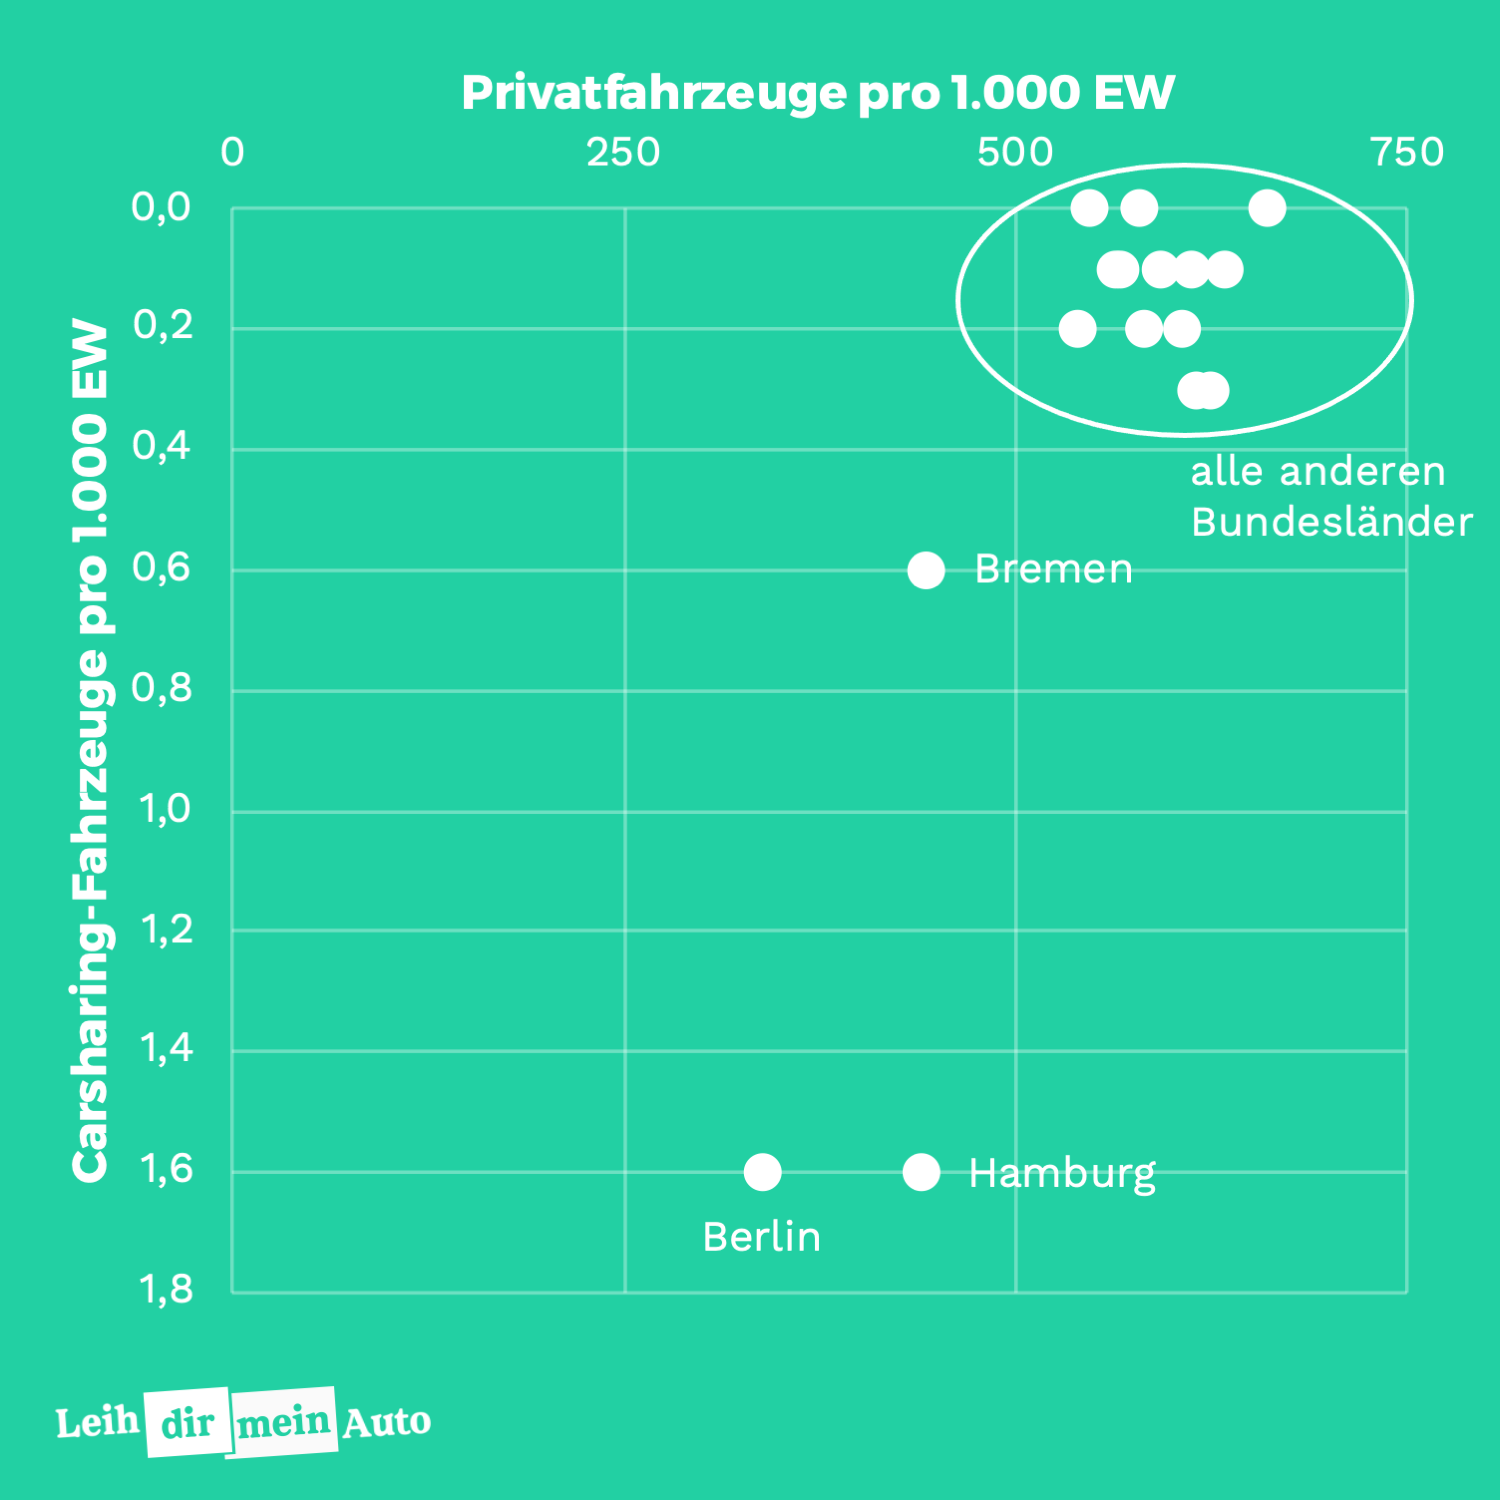 Grafik zeigt das Verhältnis der Anzahl privater Fahrzeuge zur Anzahl von Carsharing-Fahrzeugen in deutschen Bundesländern